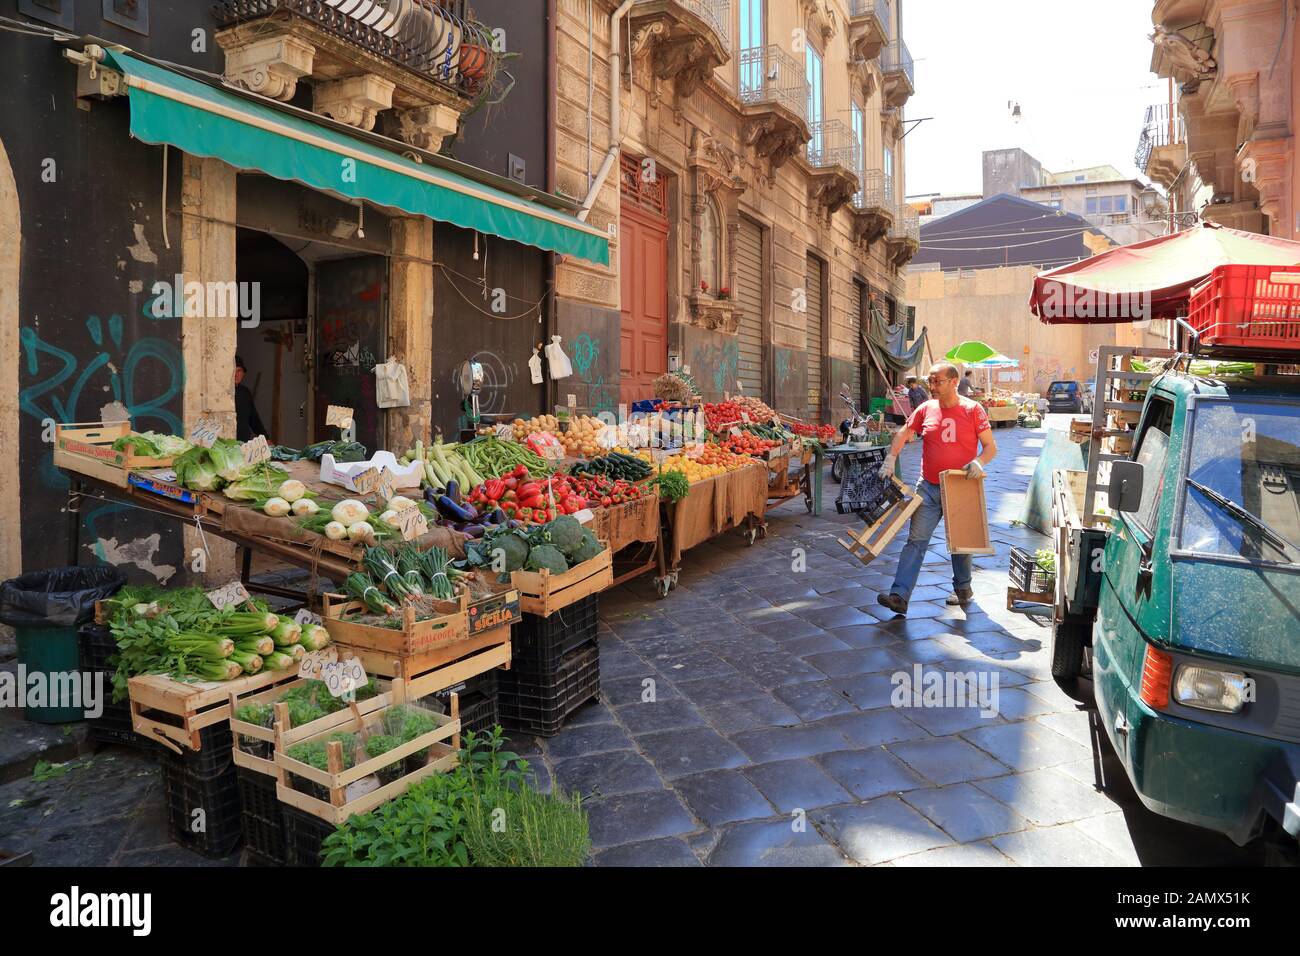 Mercado De Pescado De Catania. Mercado de frutas y verduras de la calle. La pescheria di Catania Foto de stock